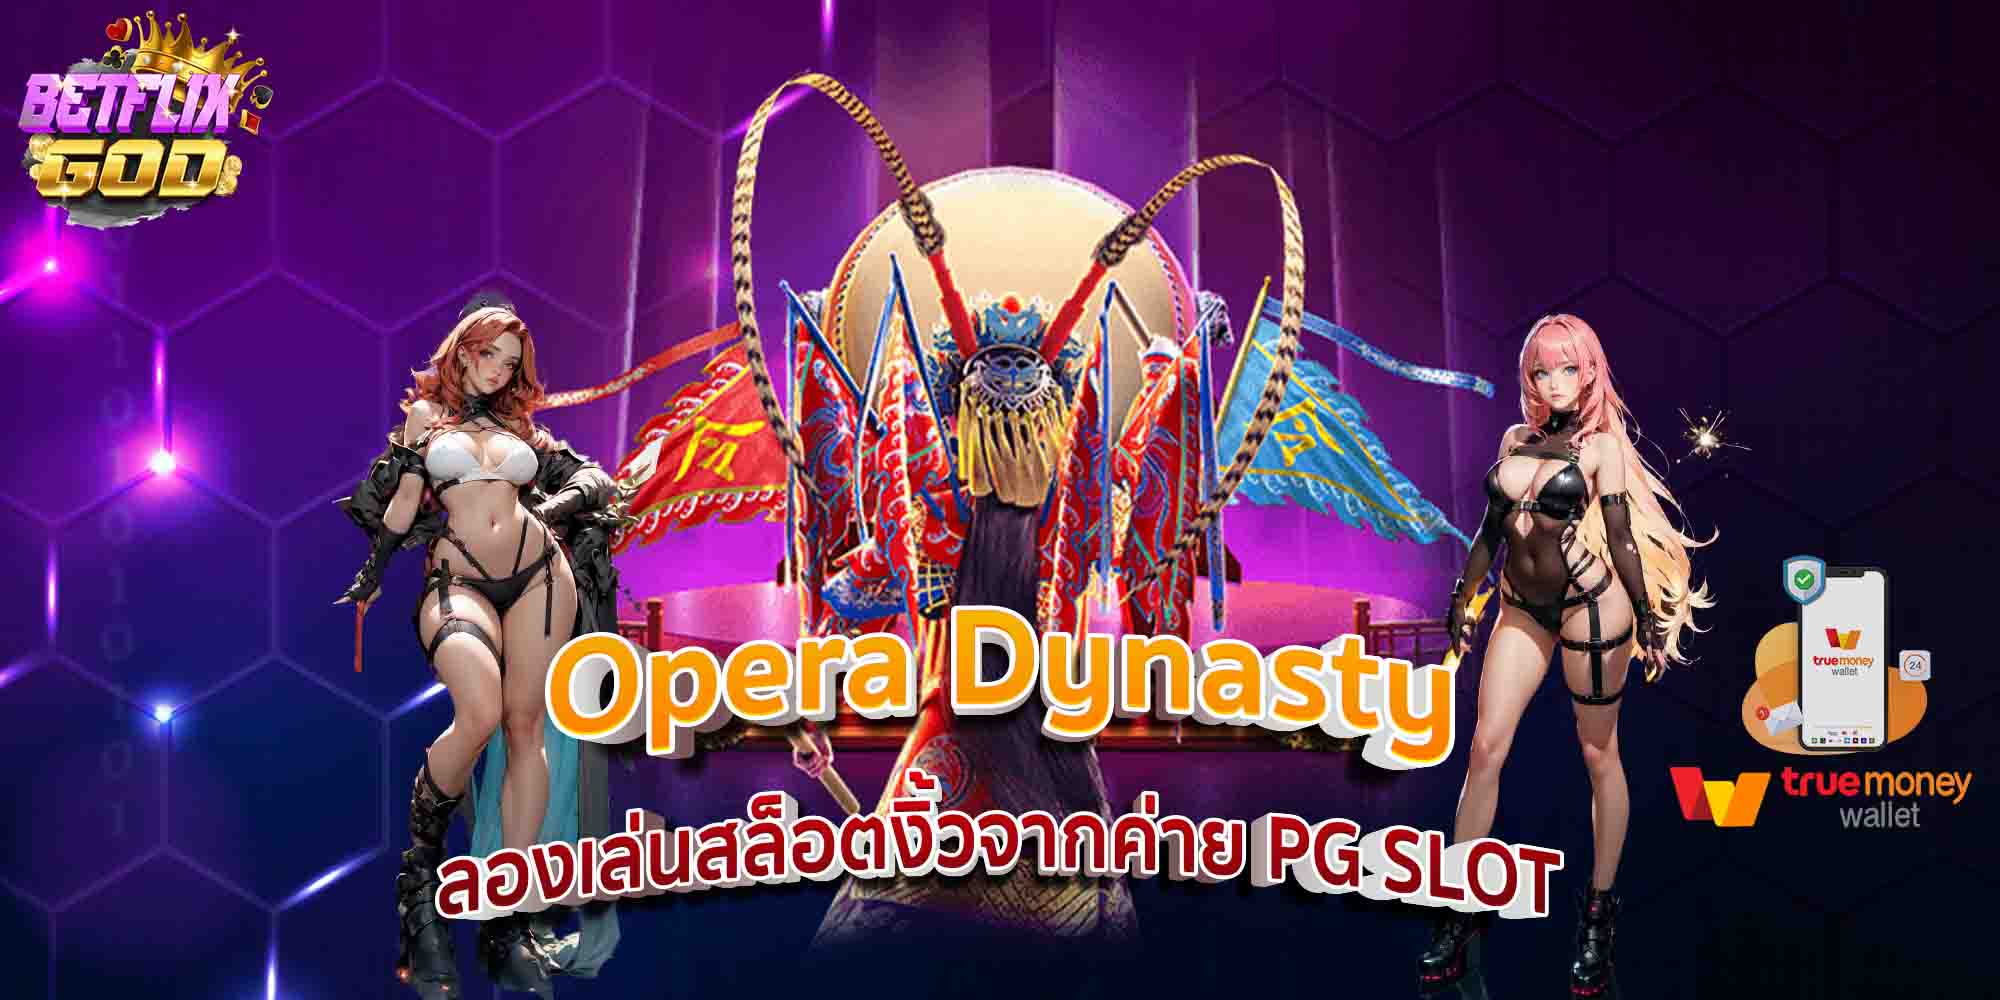 Opera Dynasty ลองเล่นสล็อตงิ้วจากค่าย PG SLOT